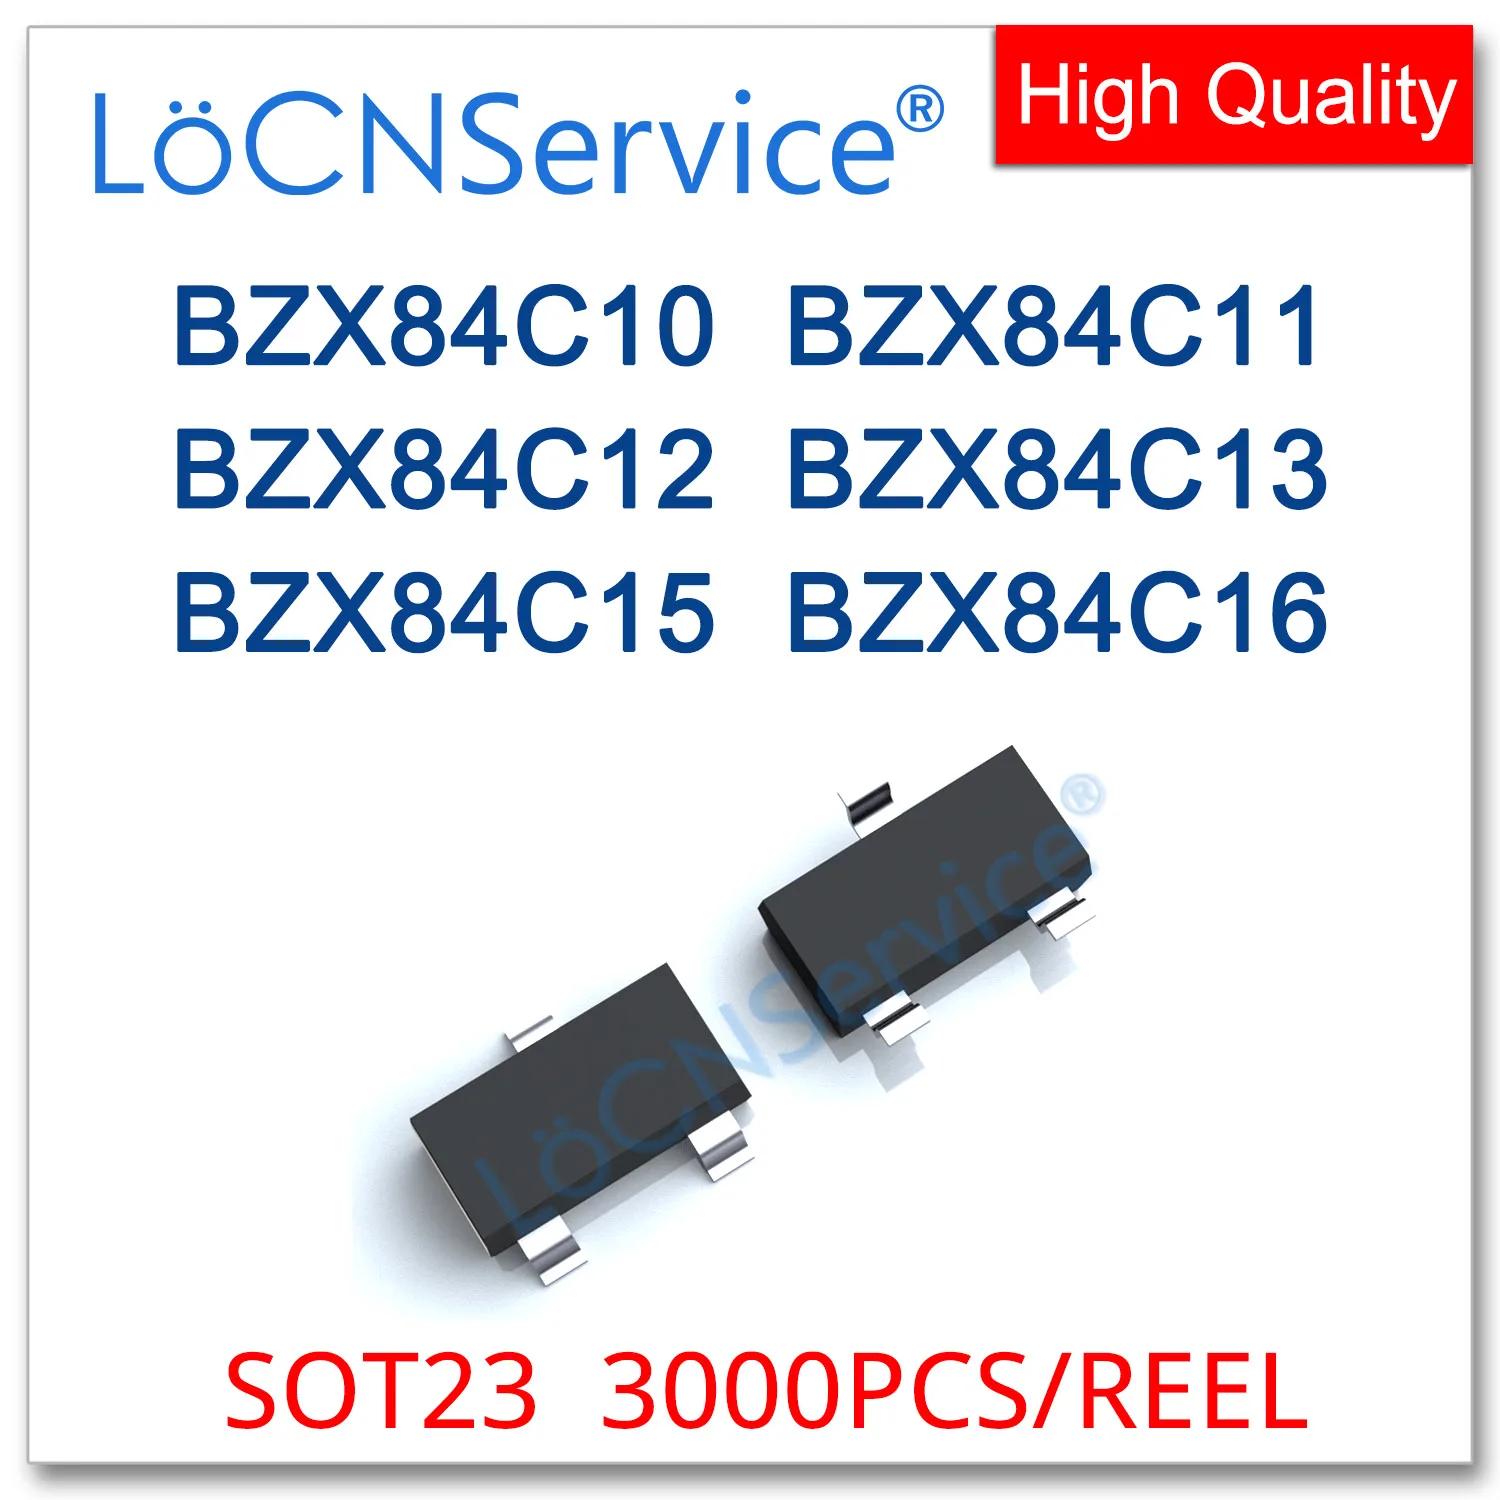 LoCNService 3000PCs, SOT23, 0.35W, BZX84C10, 10V, BZX84C11, 11V, BZX84C12, 12V, BZX84C13, 13V, BZX84C15, 15V, BZX84C